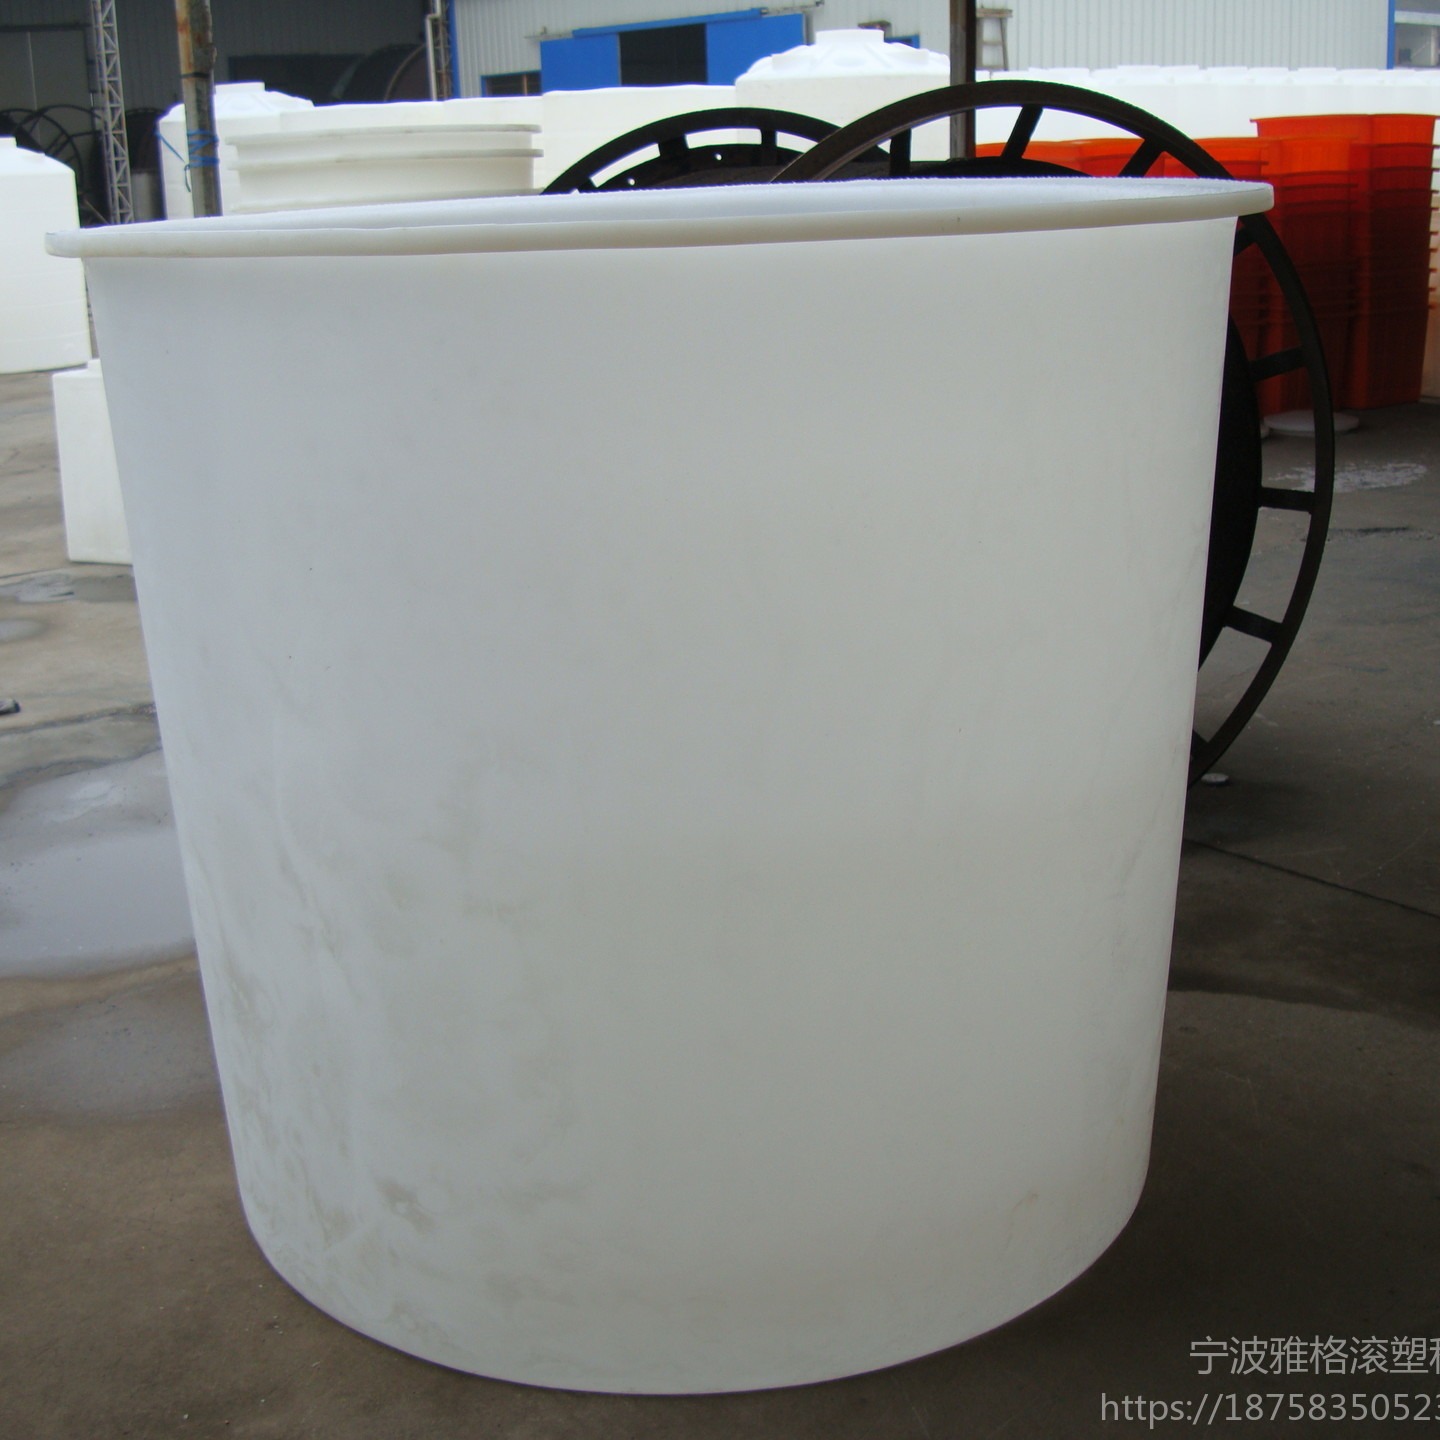 厂家直销腌制桶 雅格山西塑料圆桶 可定制